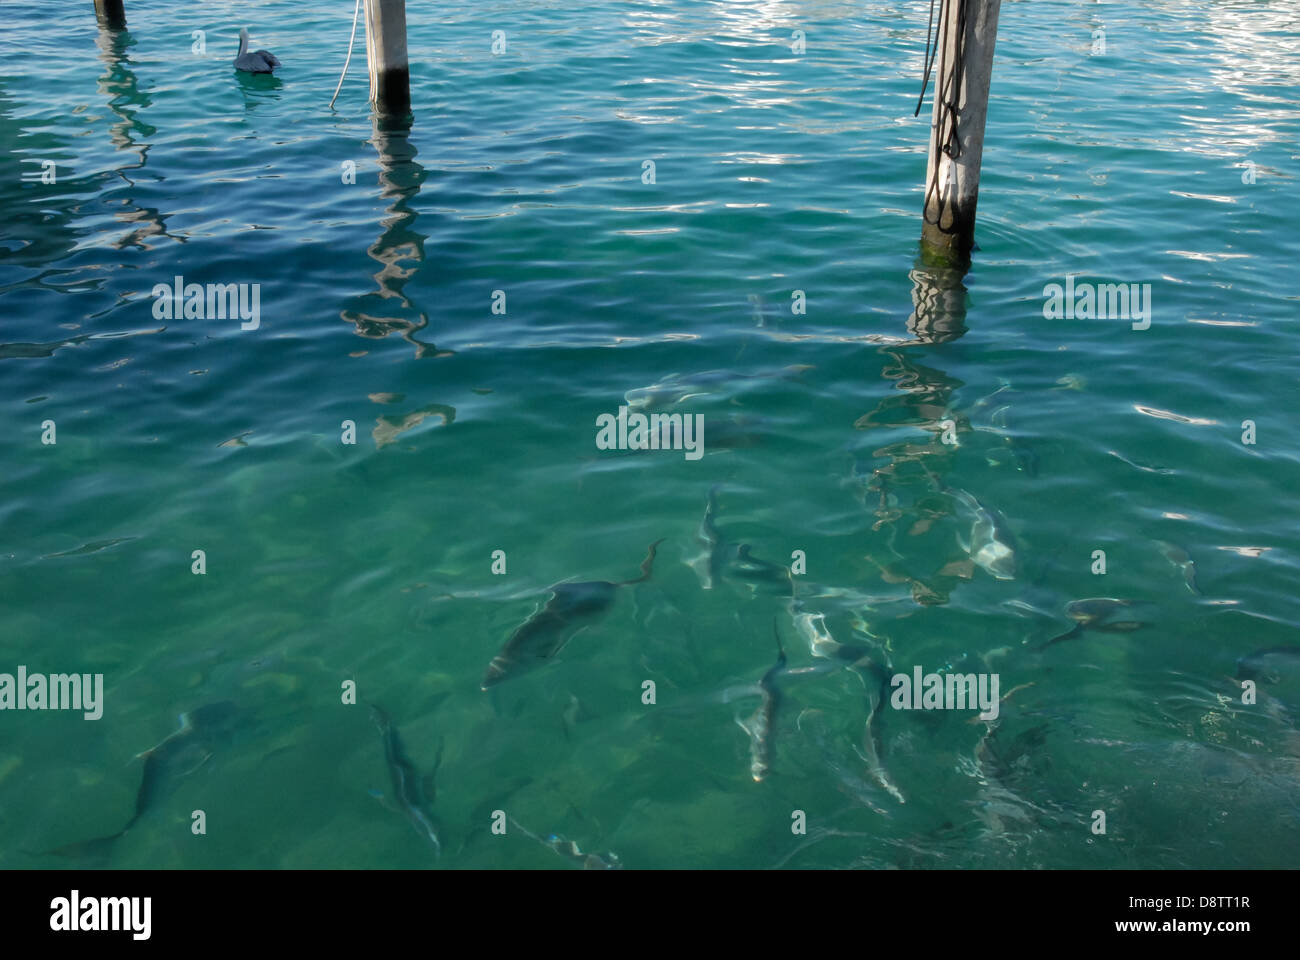 Fischfütterung im klaren, blau-grünen Wasser in der Sailfish Marina in Palm Beach Shores, Florida, in der Nähe der Palm Beach Inlet. (USA) Stockfoto